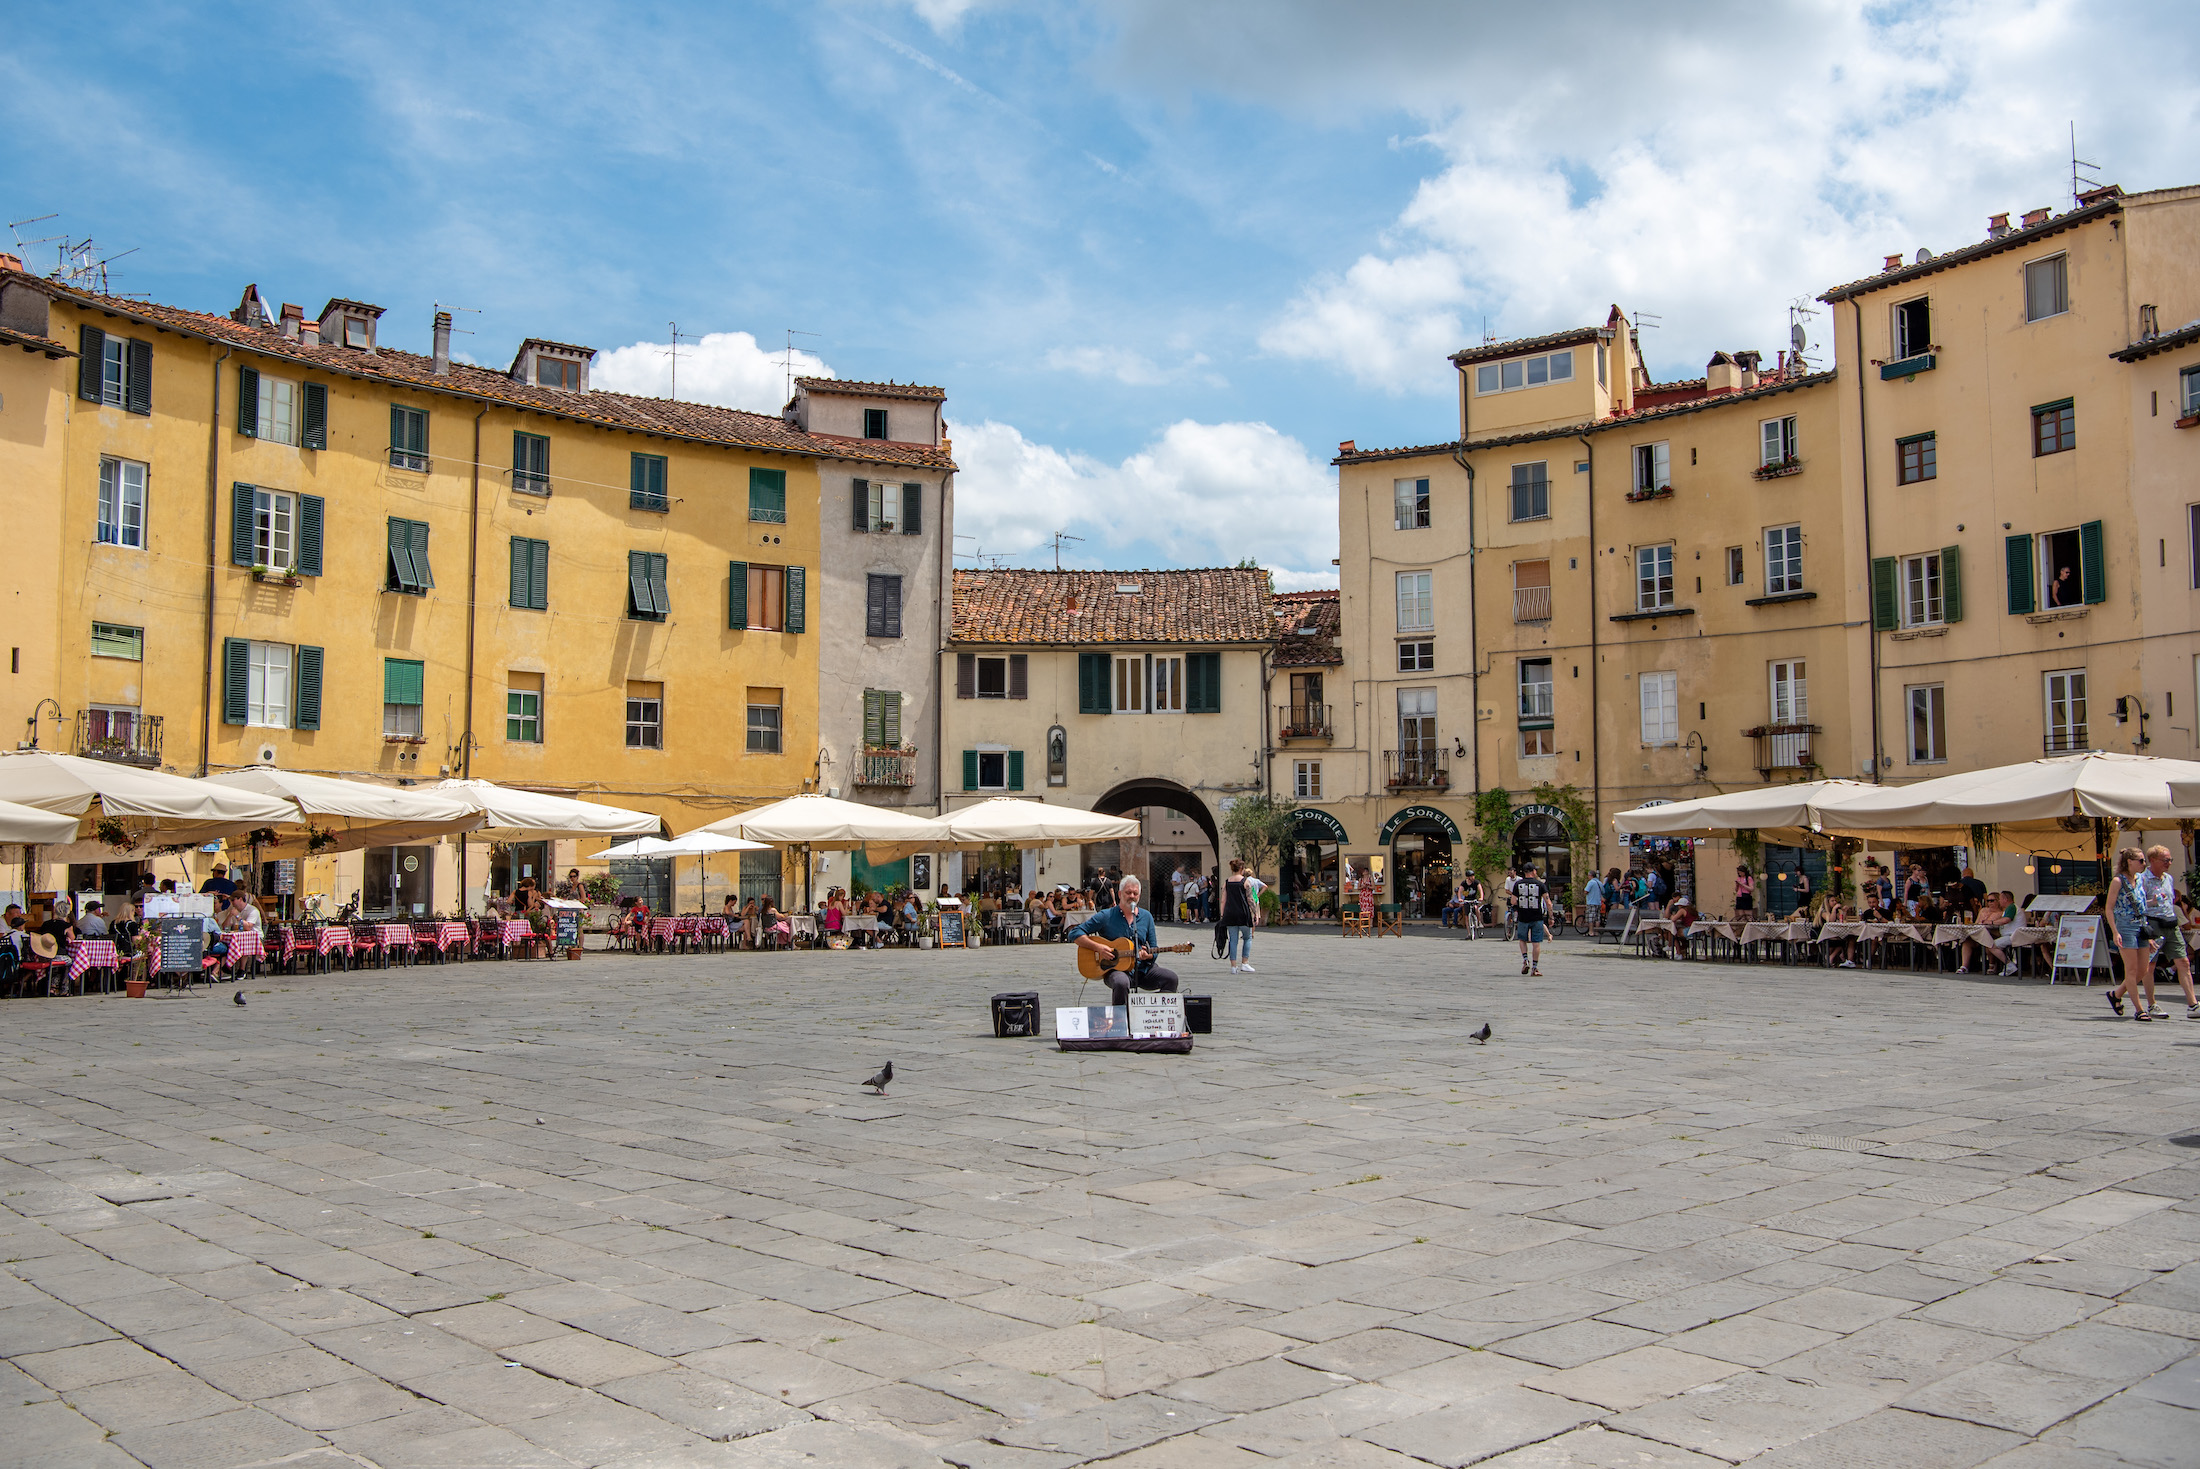 Piazza dell'Anfiteatro is het centrale - en mooiste - plein in het stadje Lucca